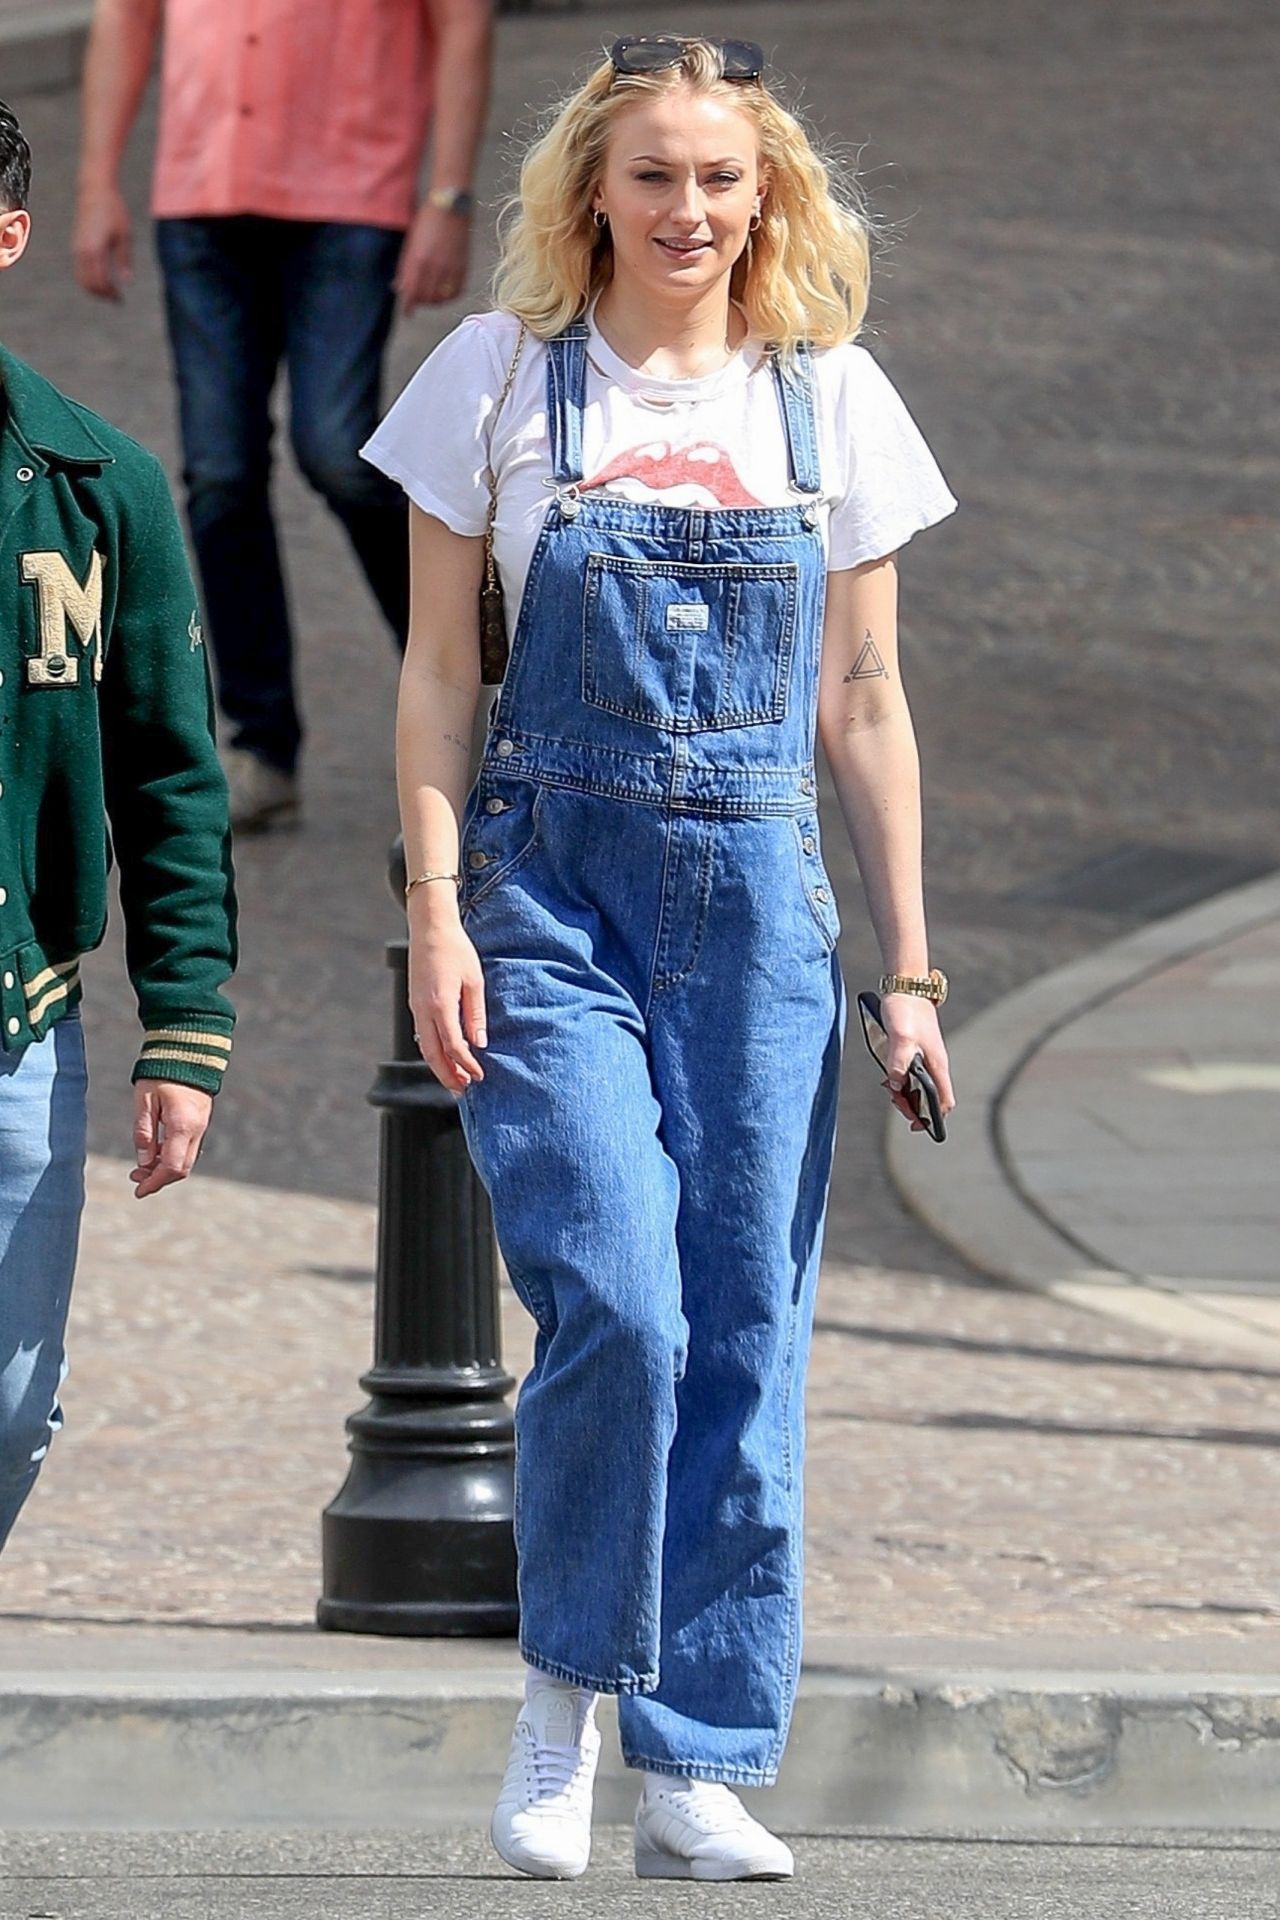 Sophie Turner Los Angeles June 20, 2020 – Star Style